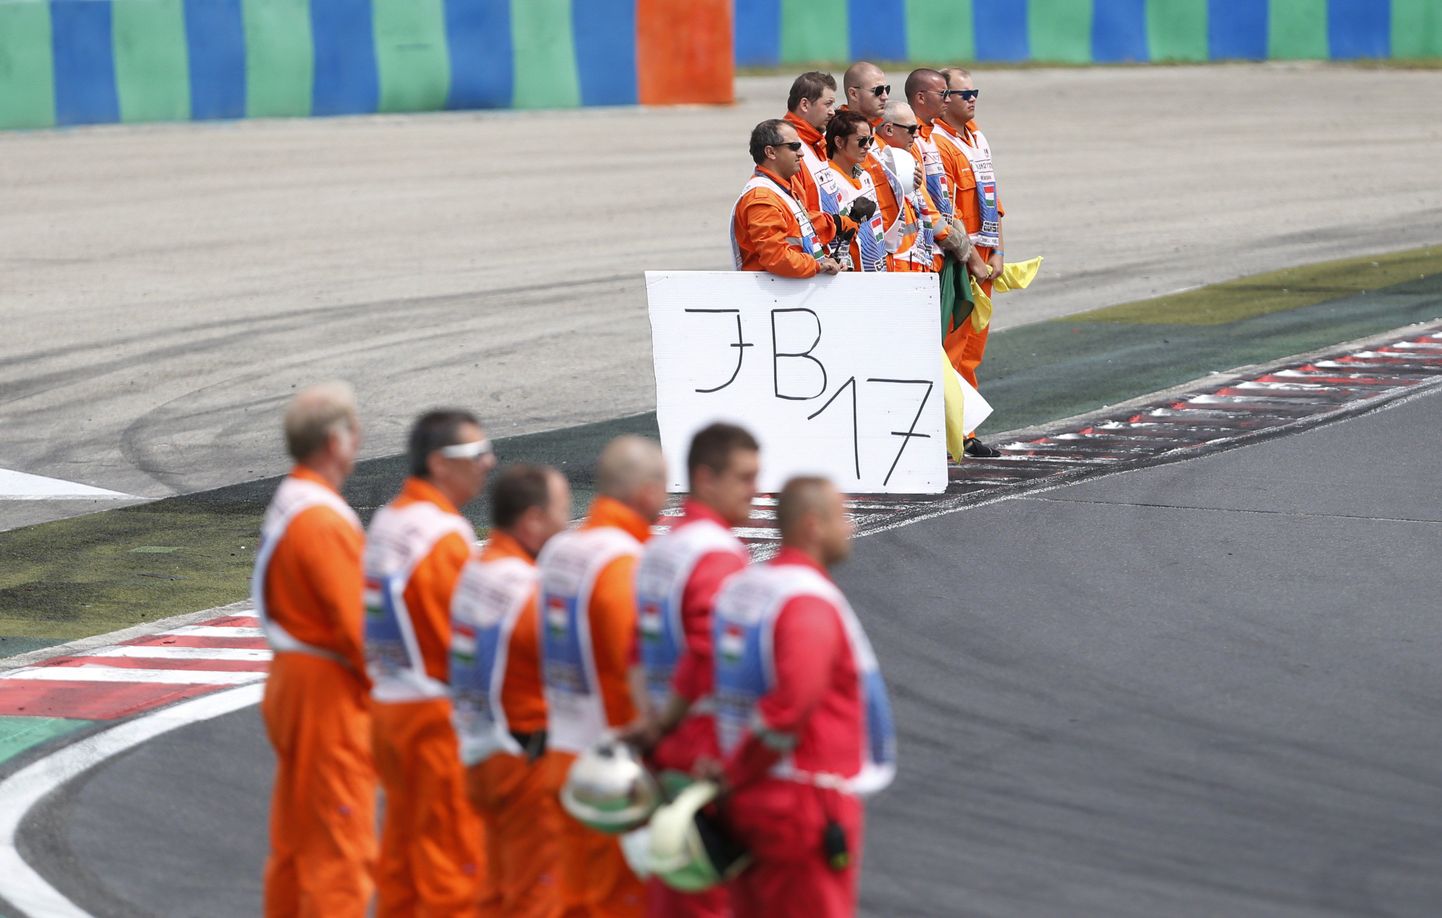 Jules Bianchi surma järel sõideti järgmine F1 sarja etapp Ungaris, kus leinaminutiga mälestasid hukkunud sõitjat nii tema kolleegid, pealtvaatajad kui ka etapi korraldajad ning rajatöölised.